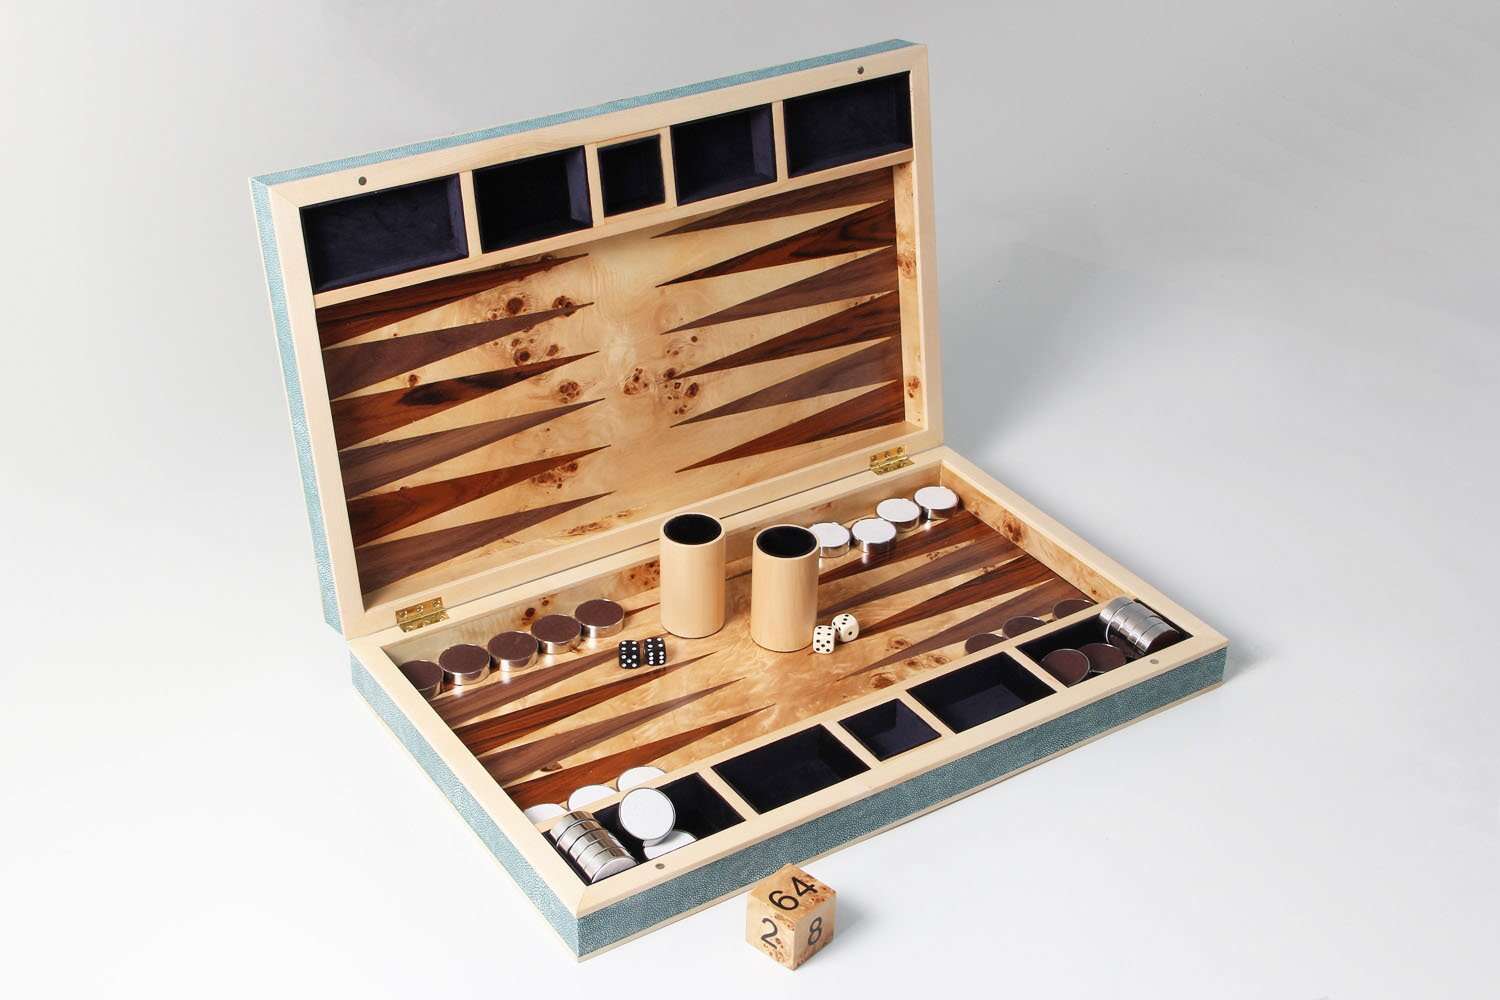 Backgammon board teal shagreen bakgammon board